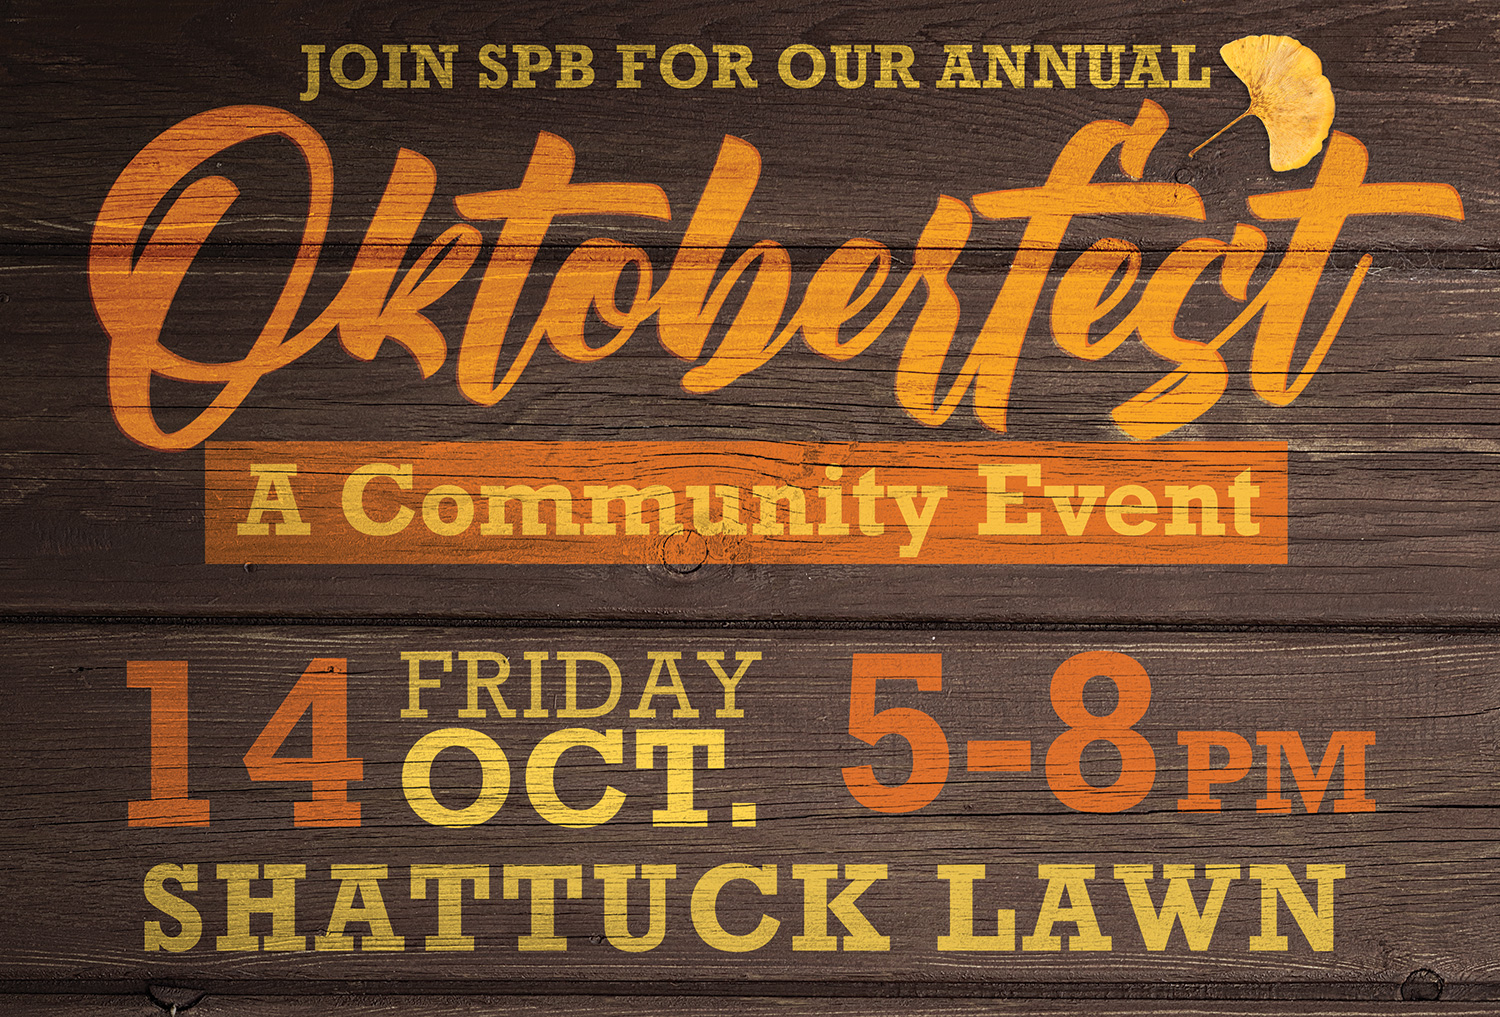 Oktoberfest Oct 14 5-8pm Shattuck Lawn